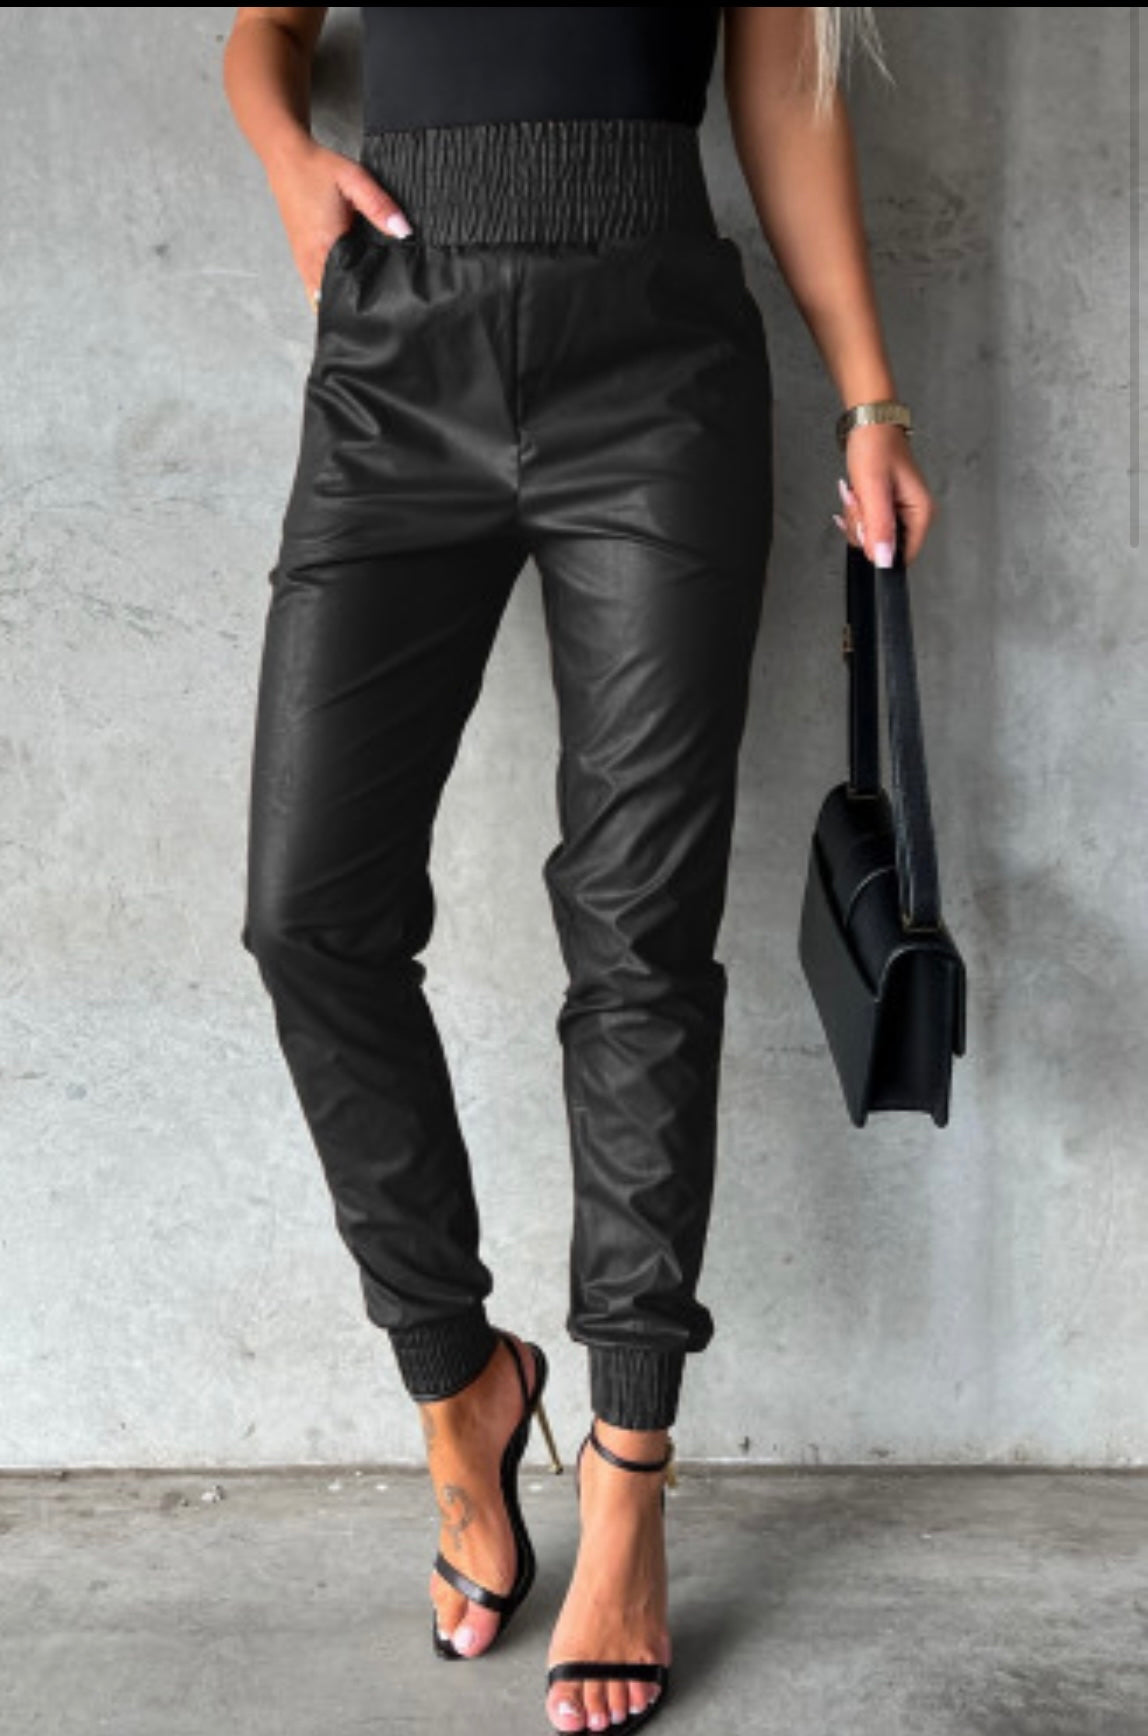 Faux leather pants